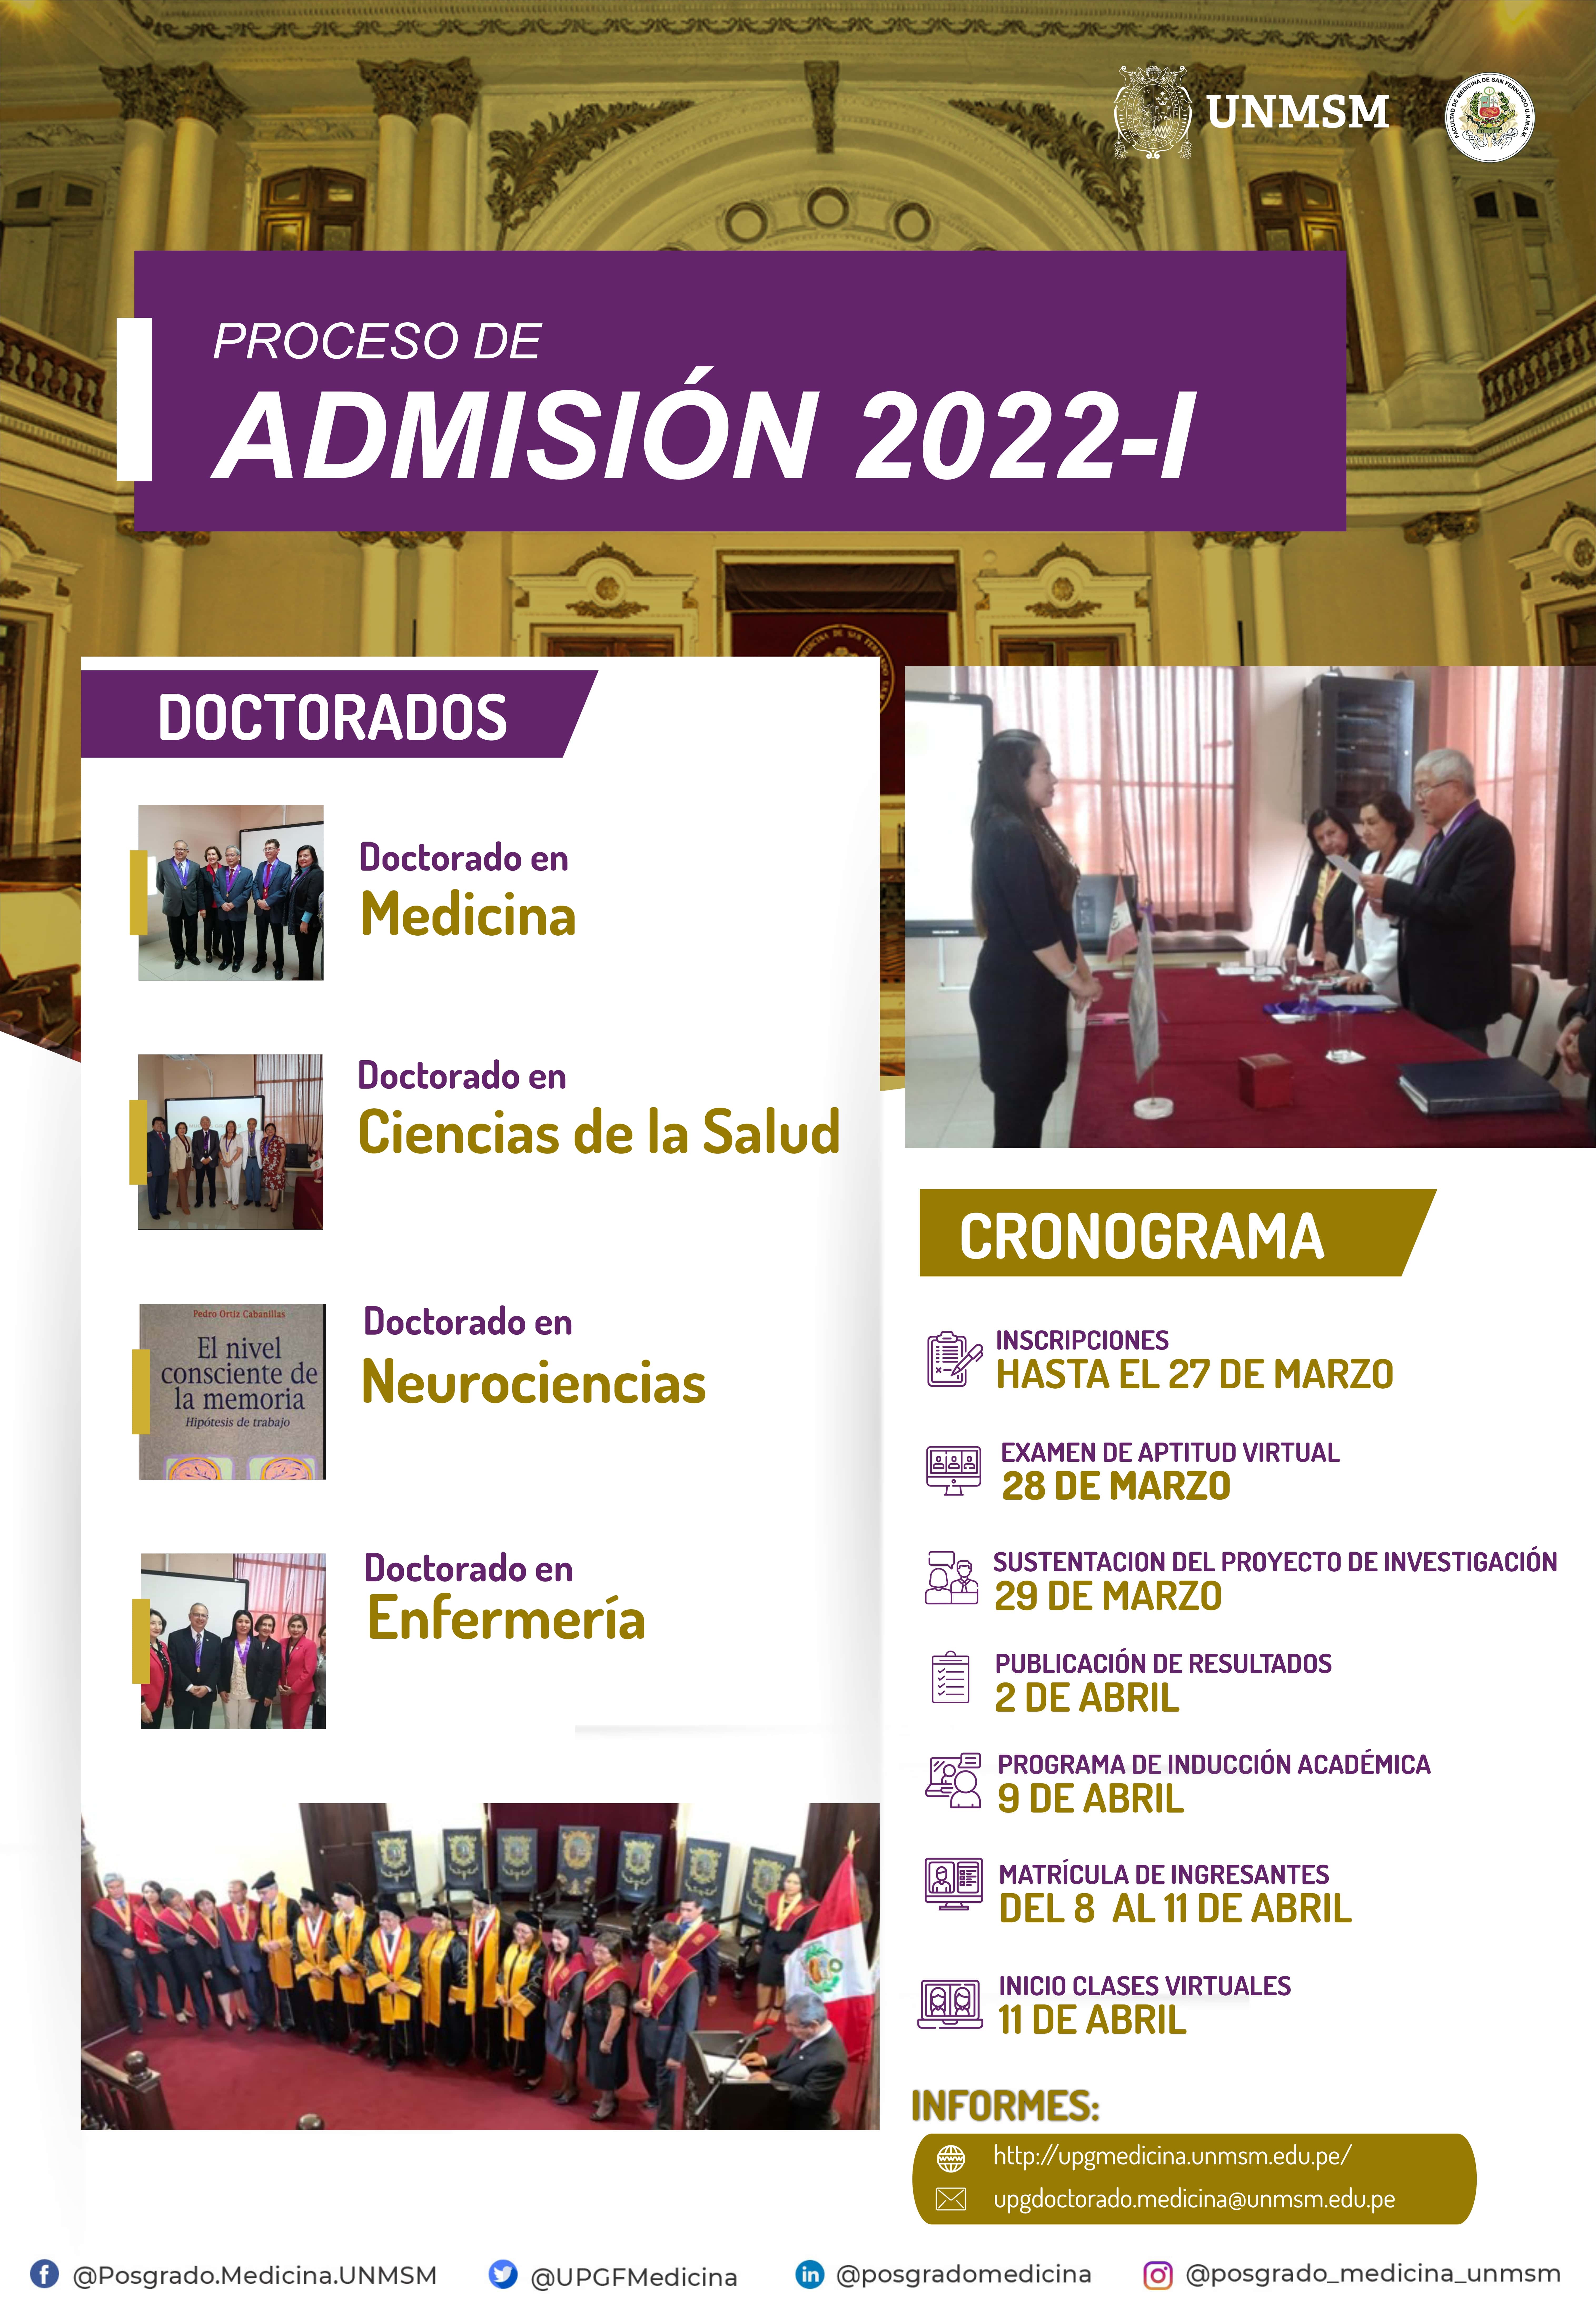 Proceso de Admisión Doctorados 2022-I